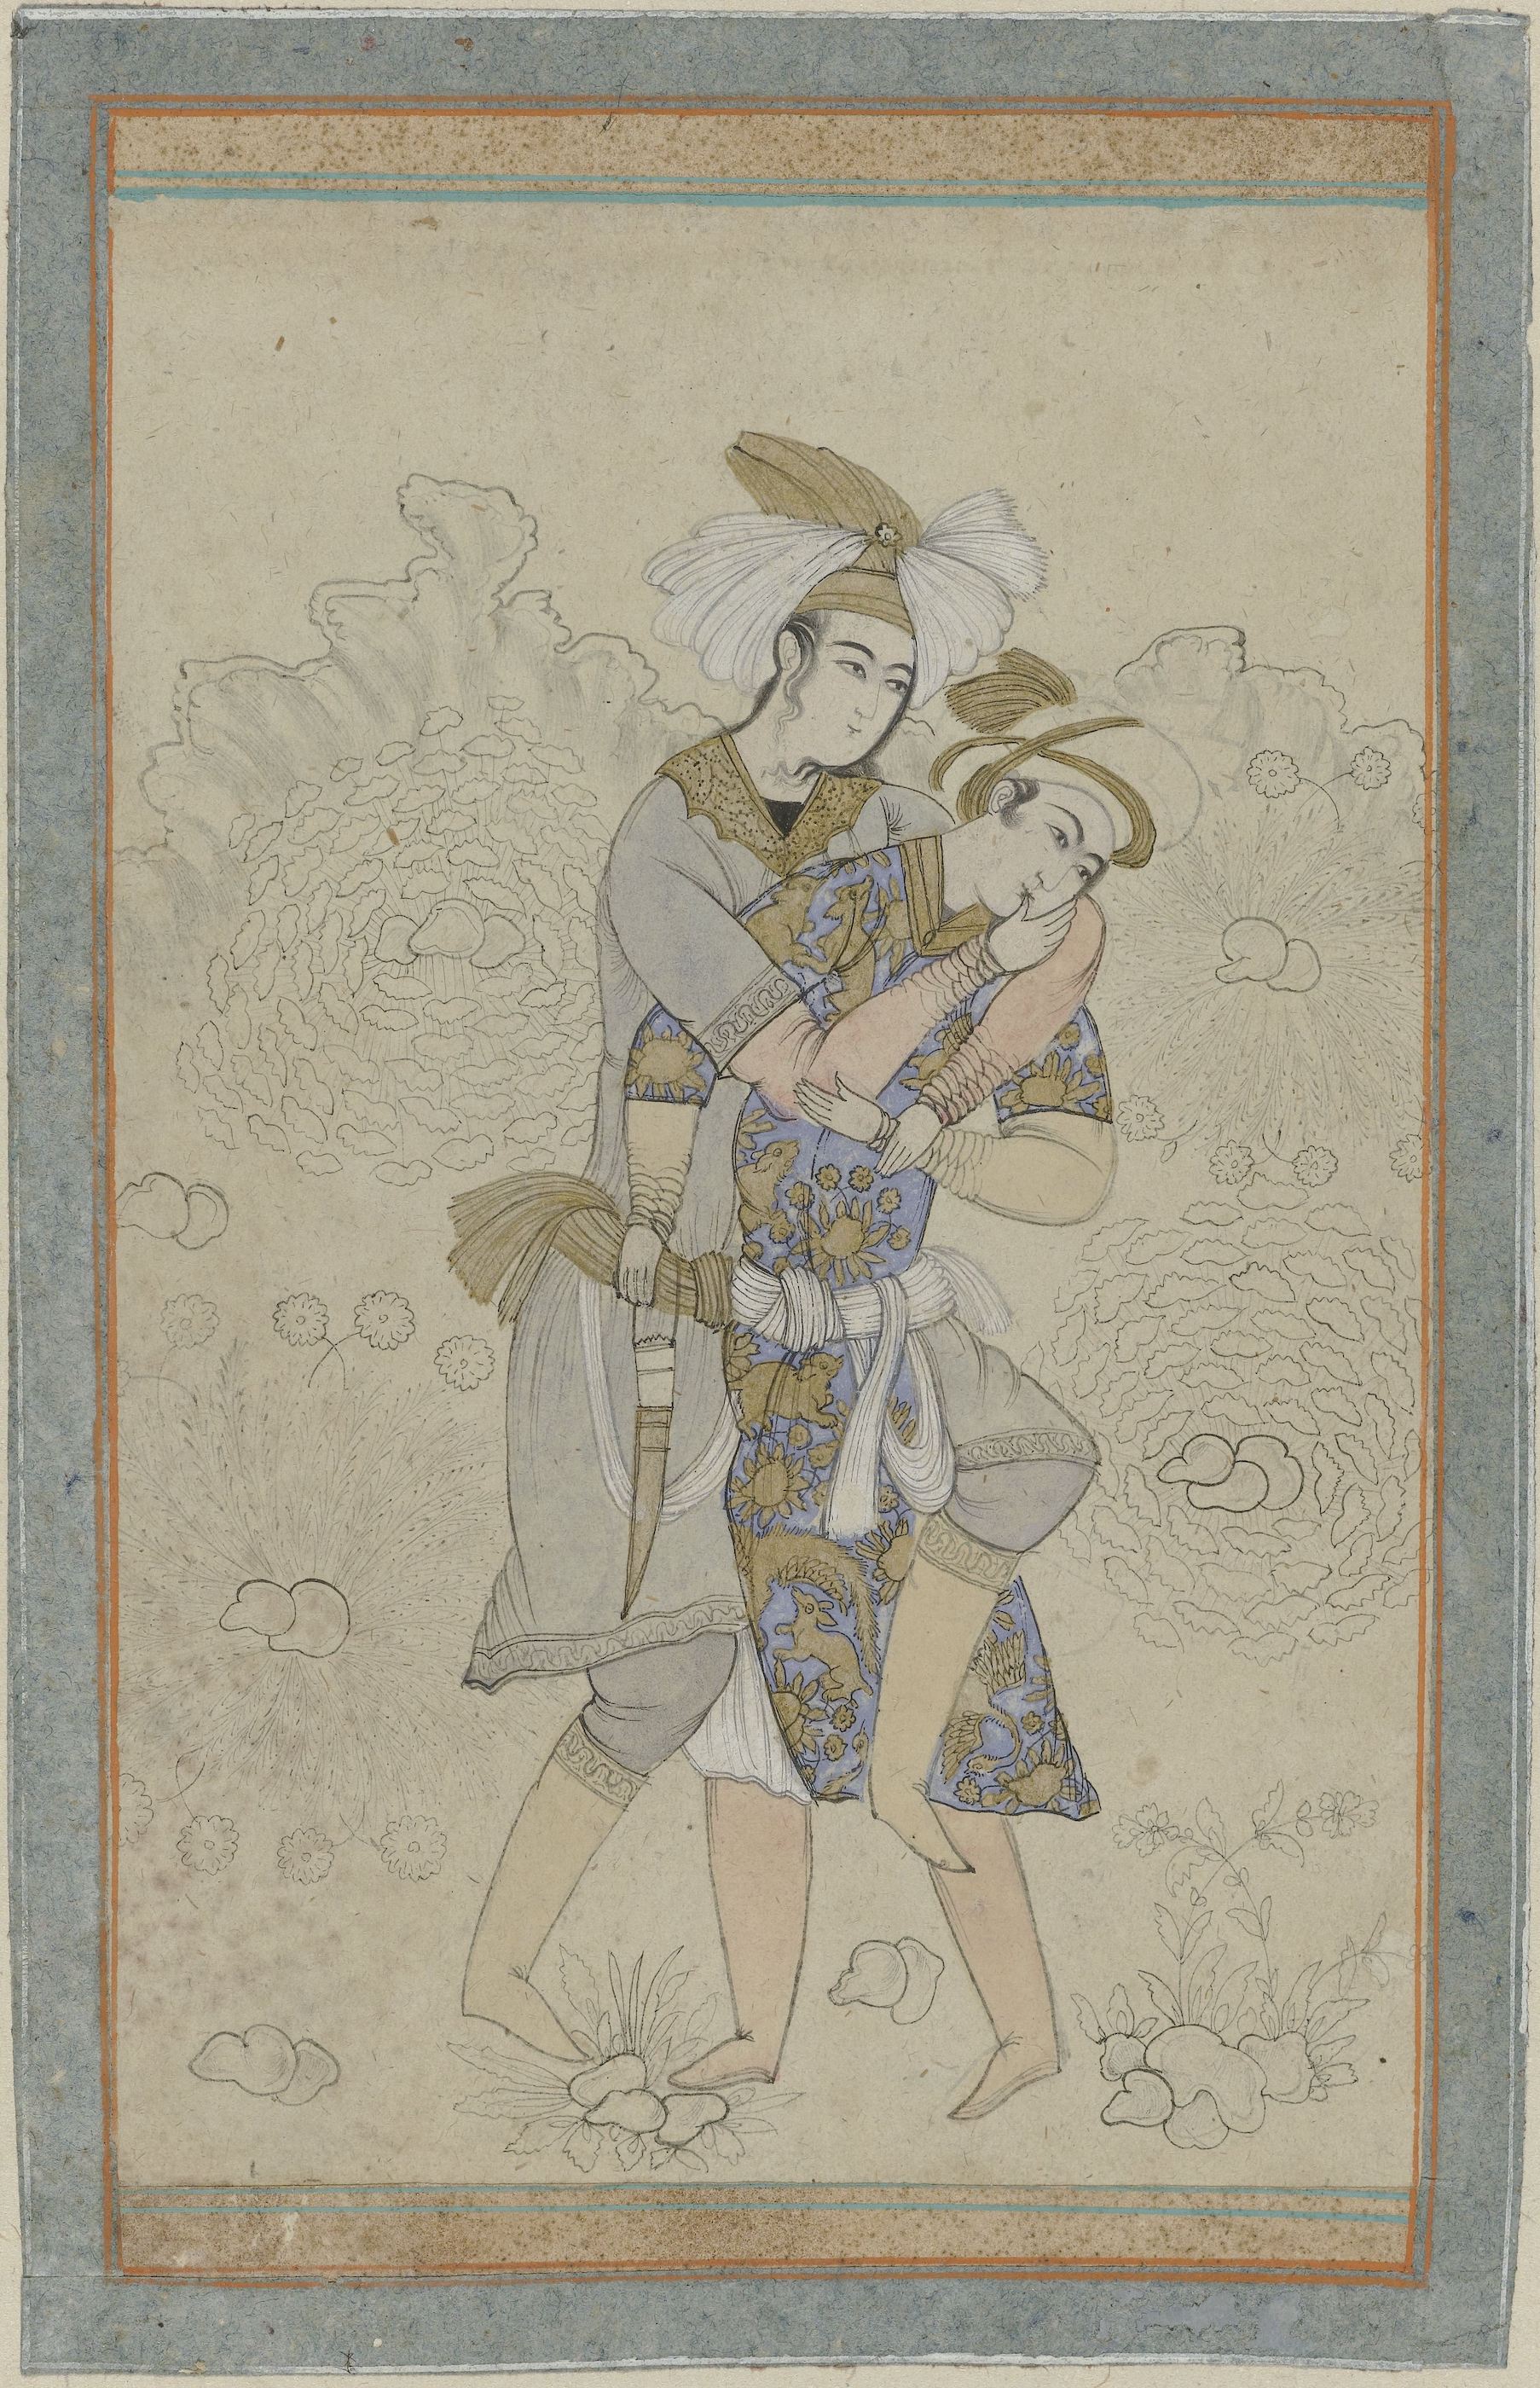 情色拥抱中的两个年轻人 by 未知艺术家  - c. 1866 - c. 1899 - 30 x 42.5 cm 